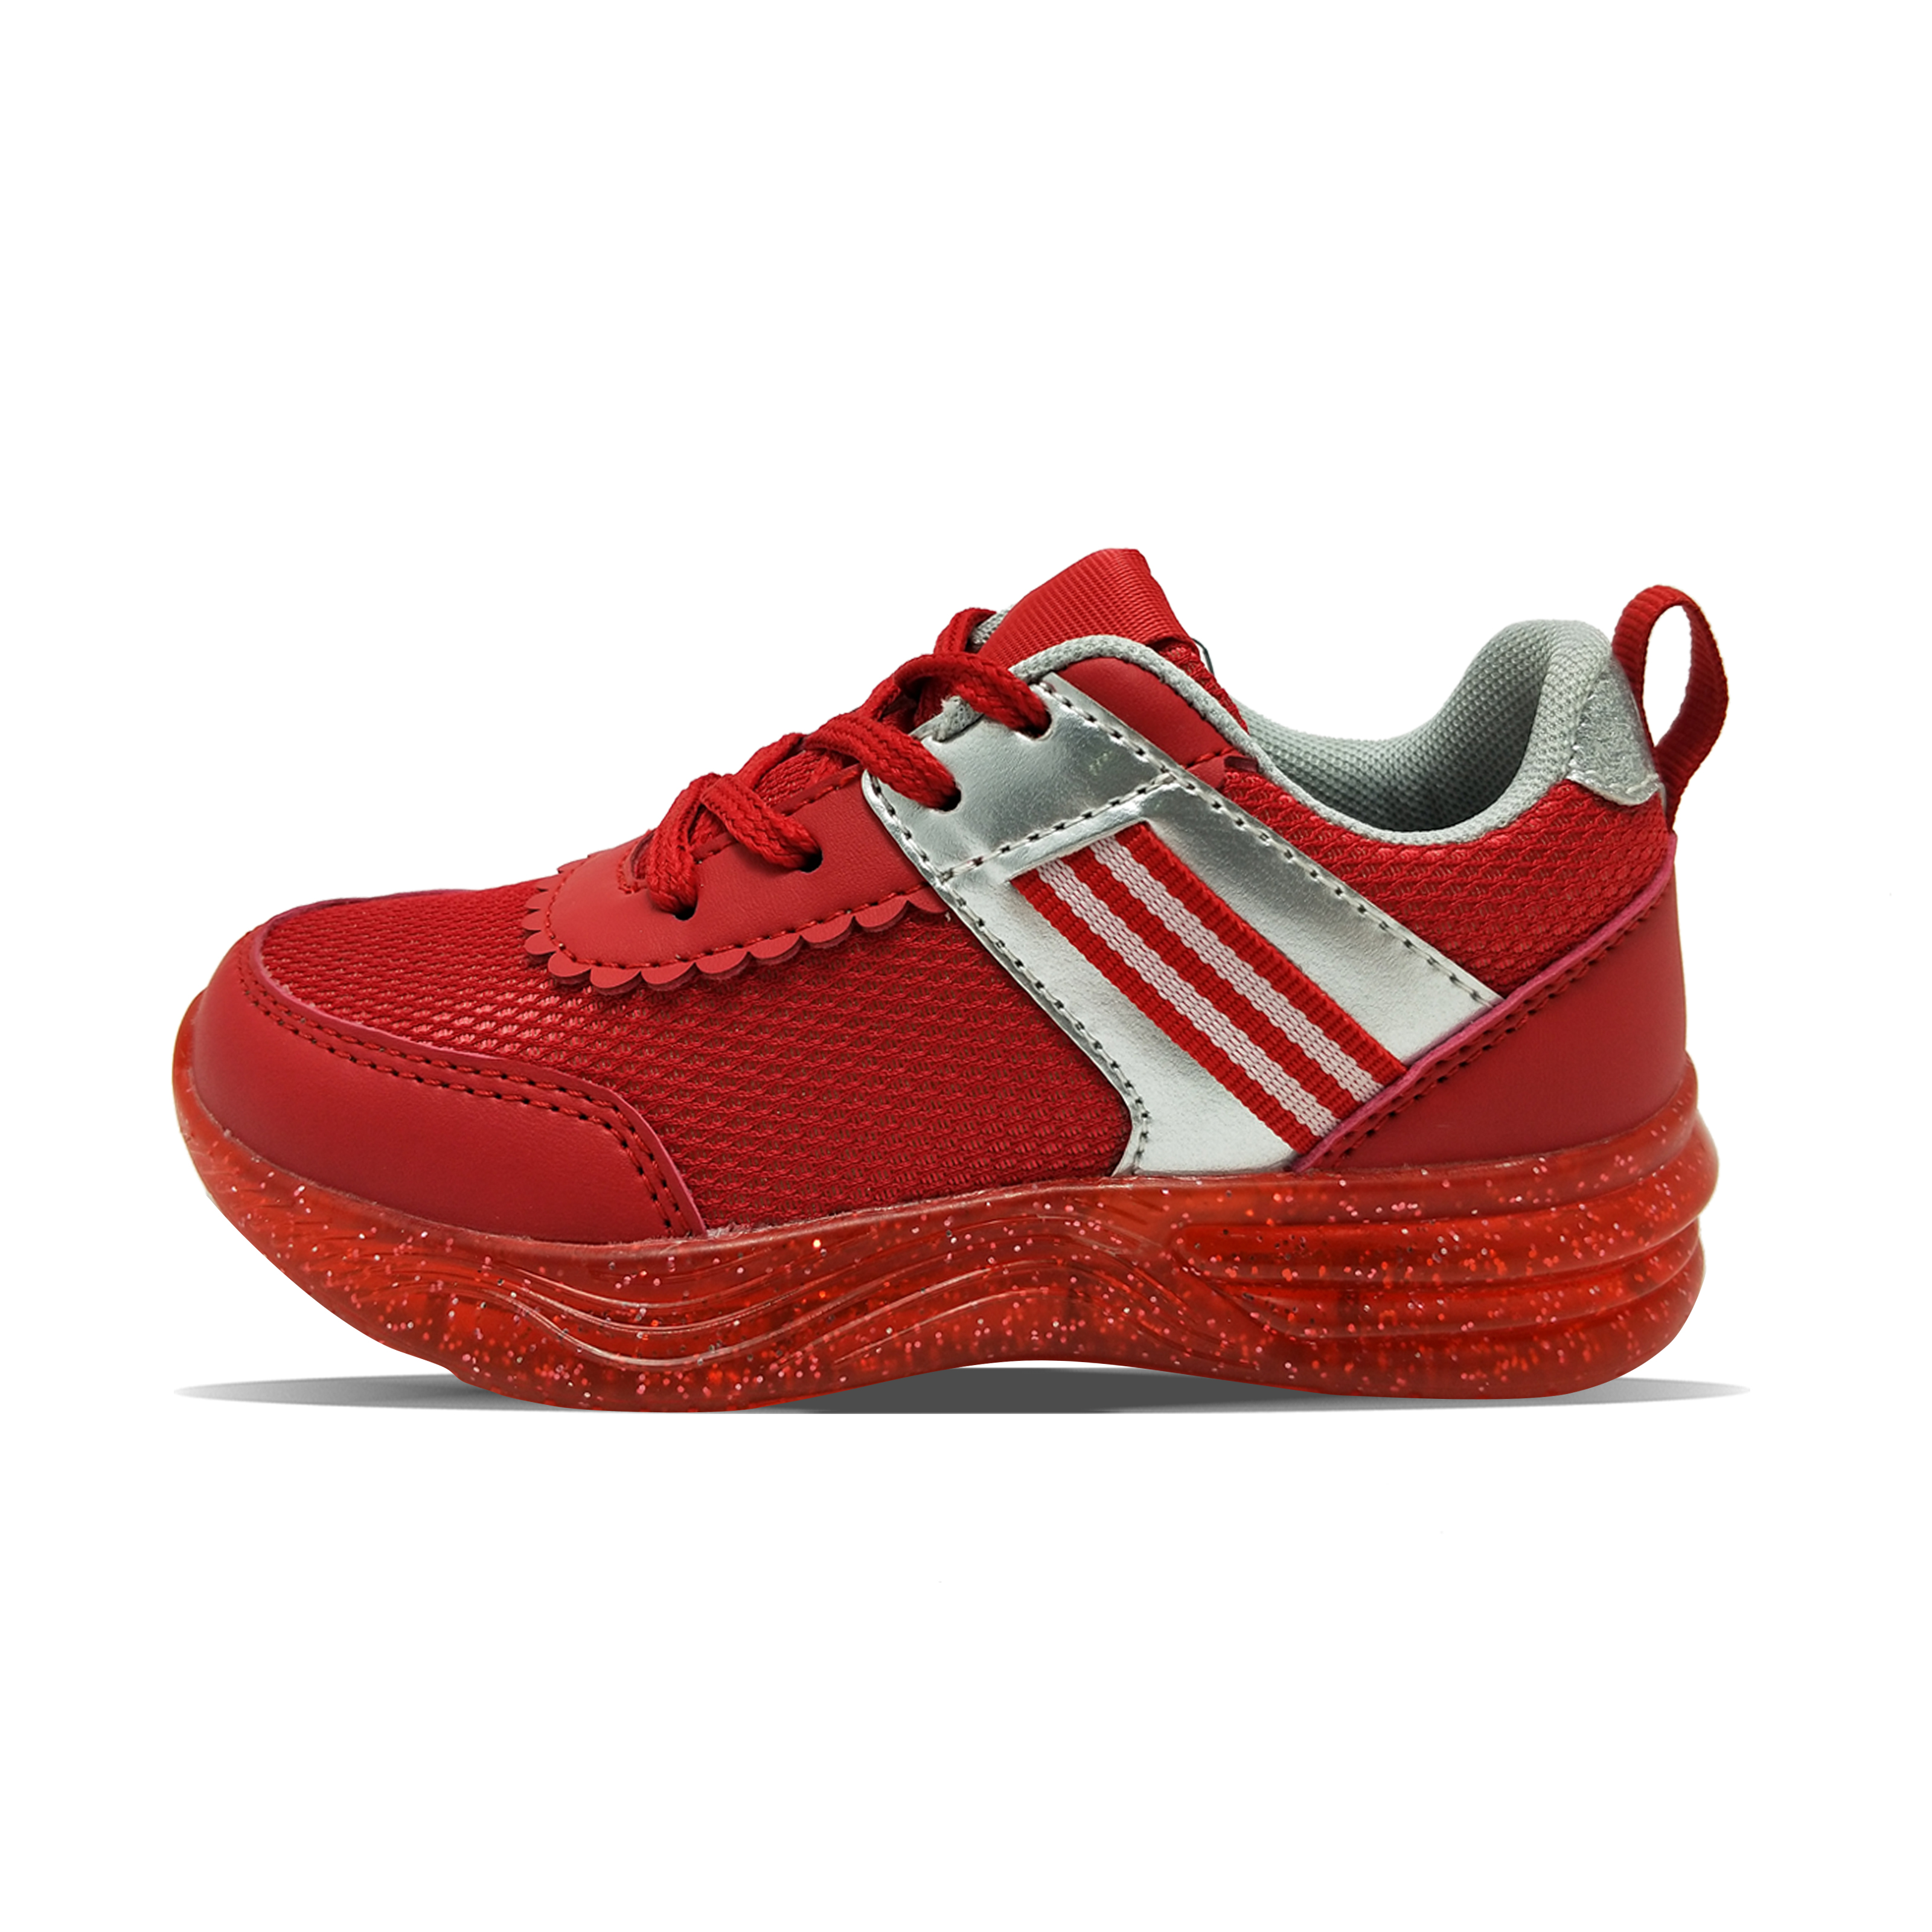 Różowa czerwona srebrna galaretka PU przewyższa gumową taśmą, damskie buty sportowe.